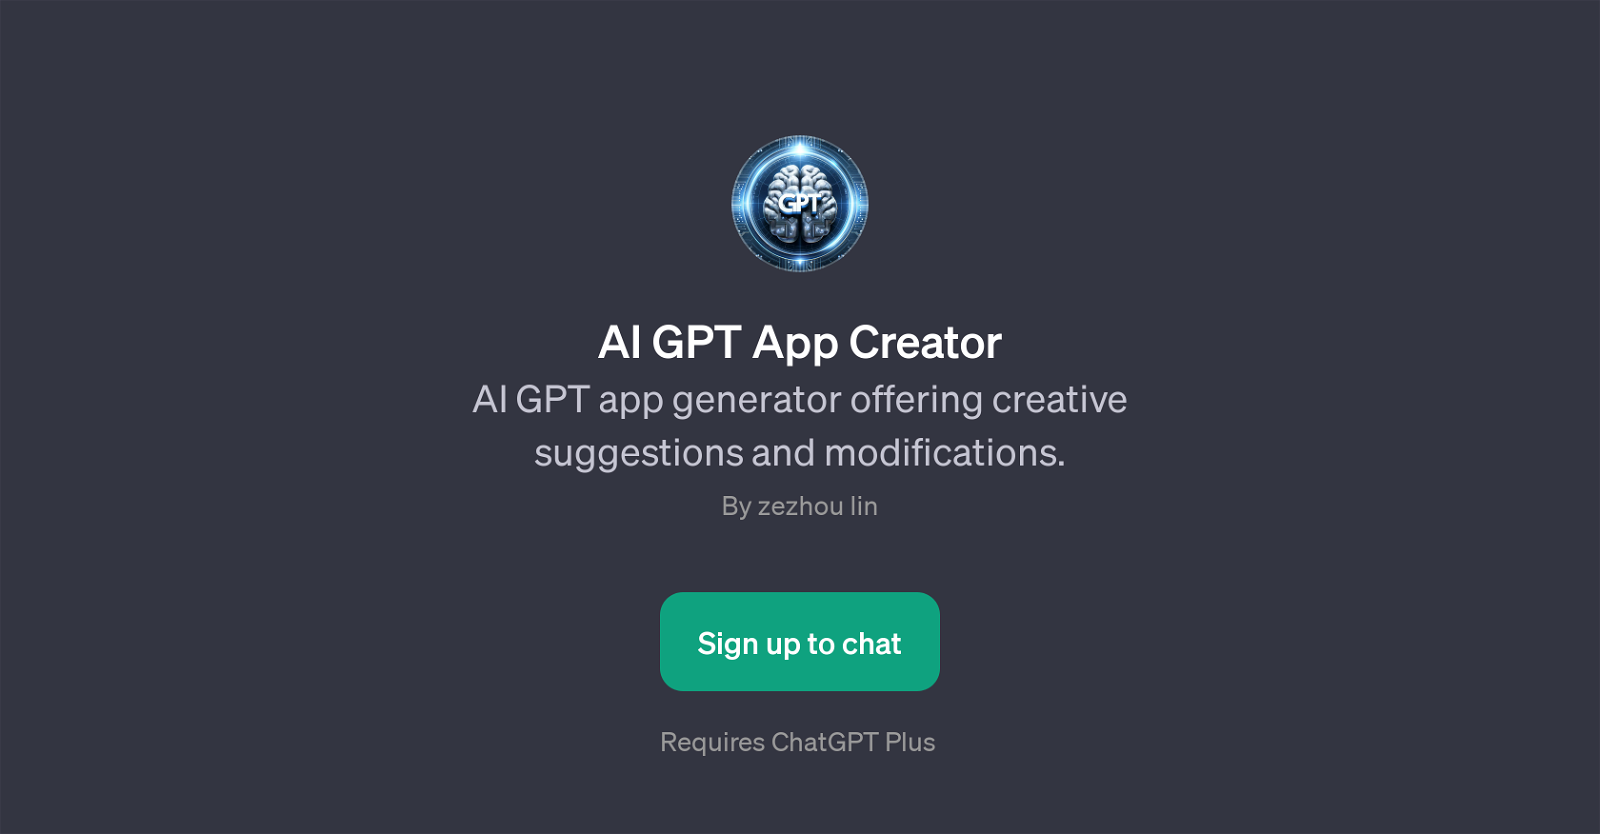 AI GPT App Creator website